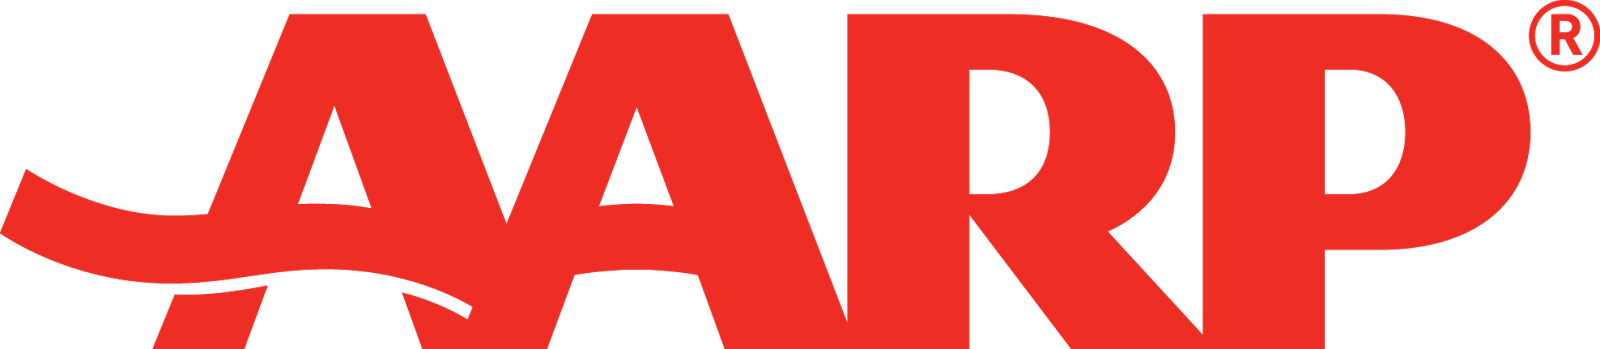 aarp logo.png